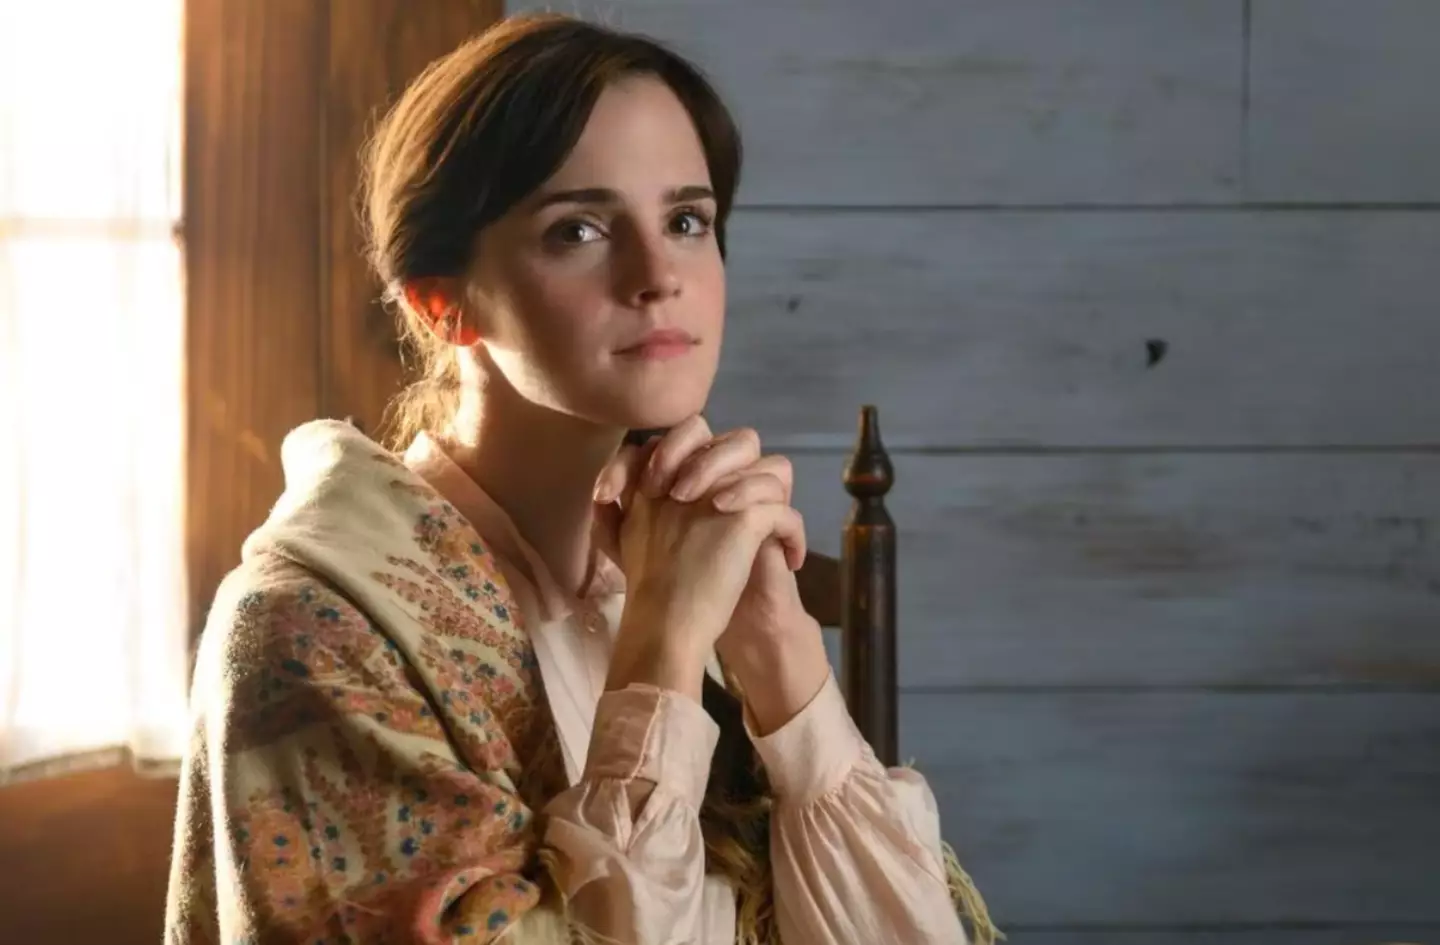 Emma Watson last appeared on the big screen in 2019’s Little Women.